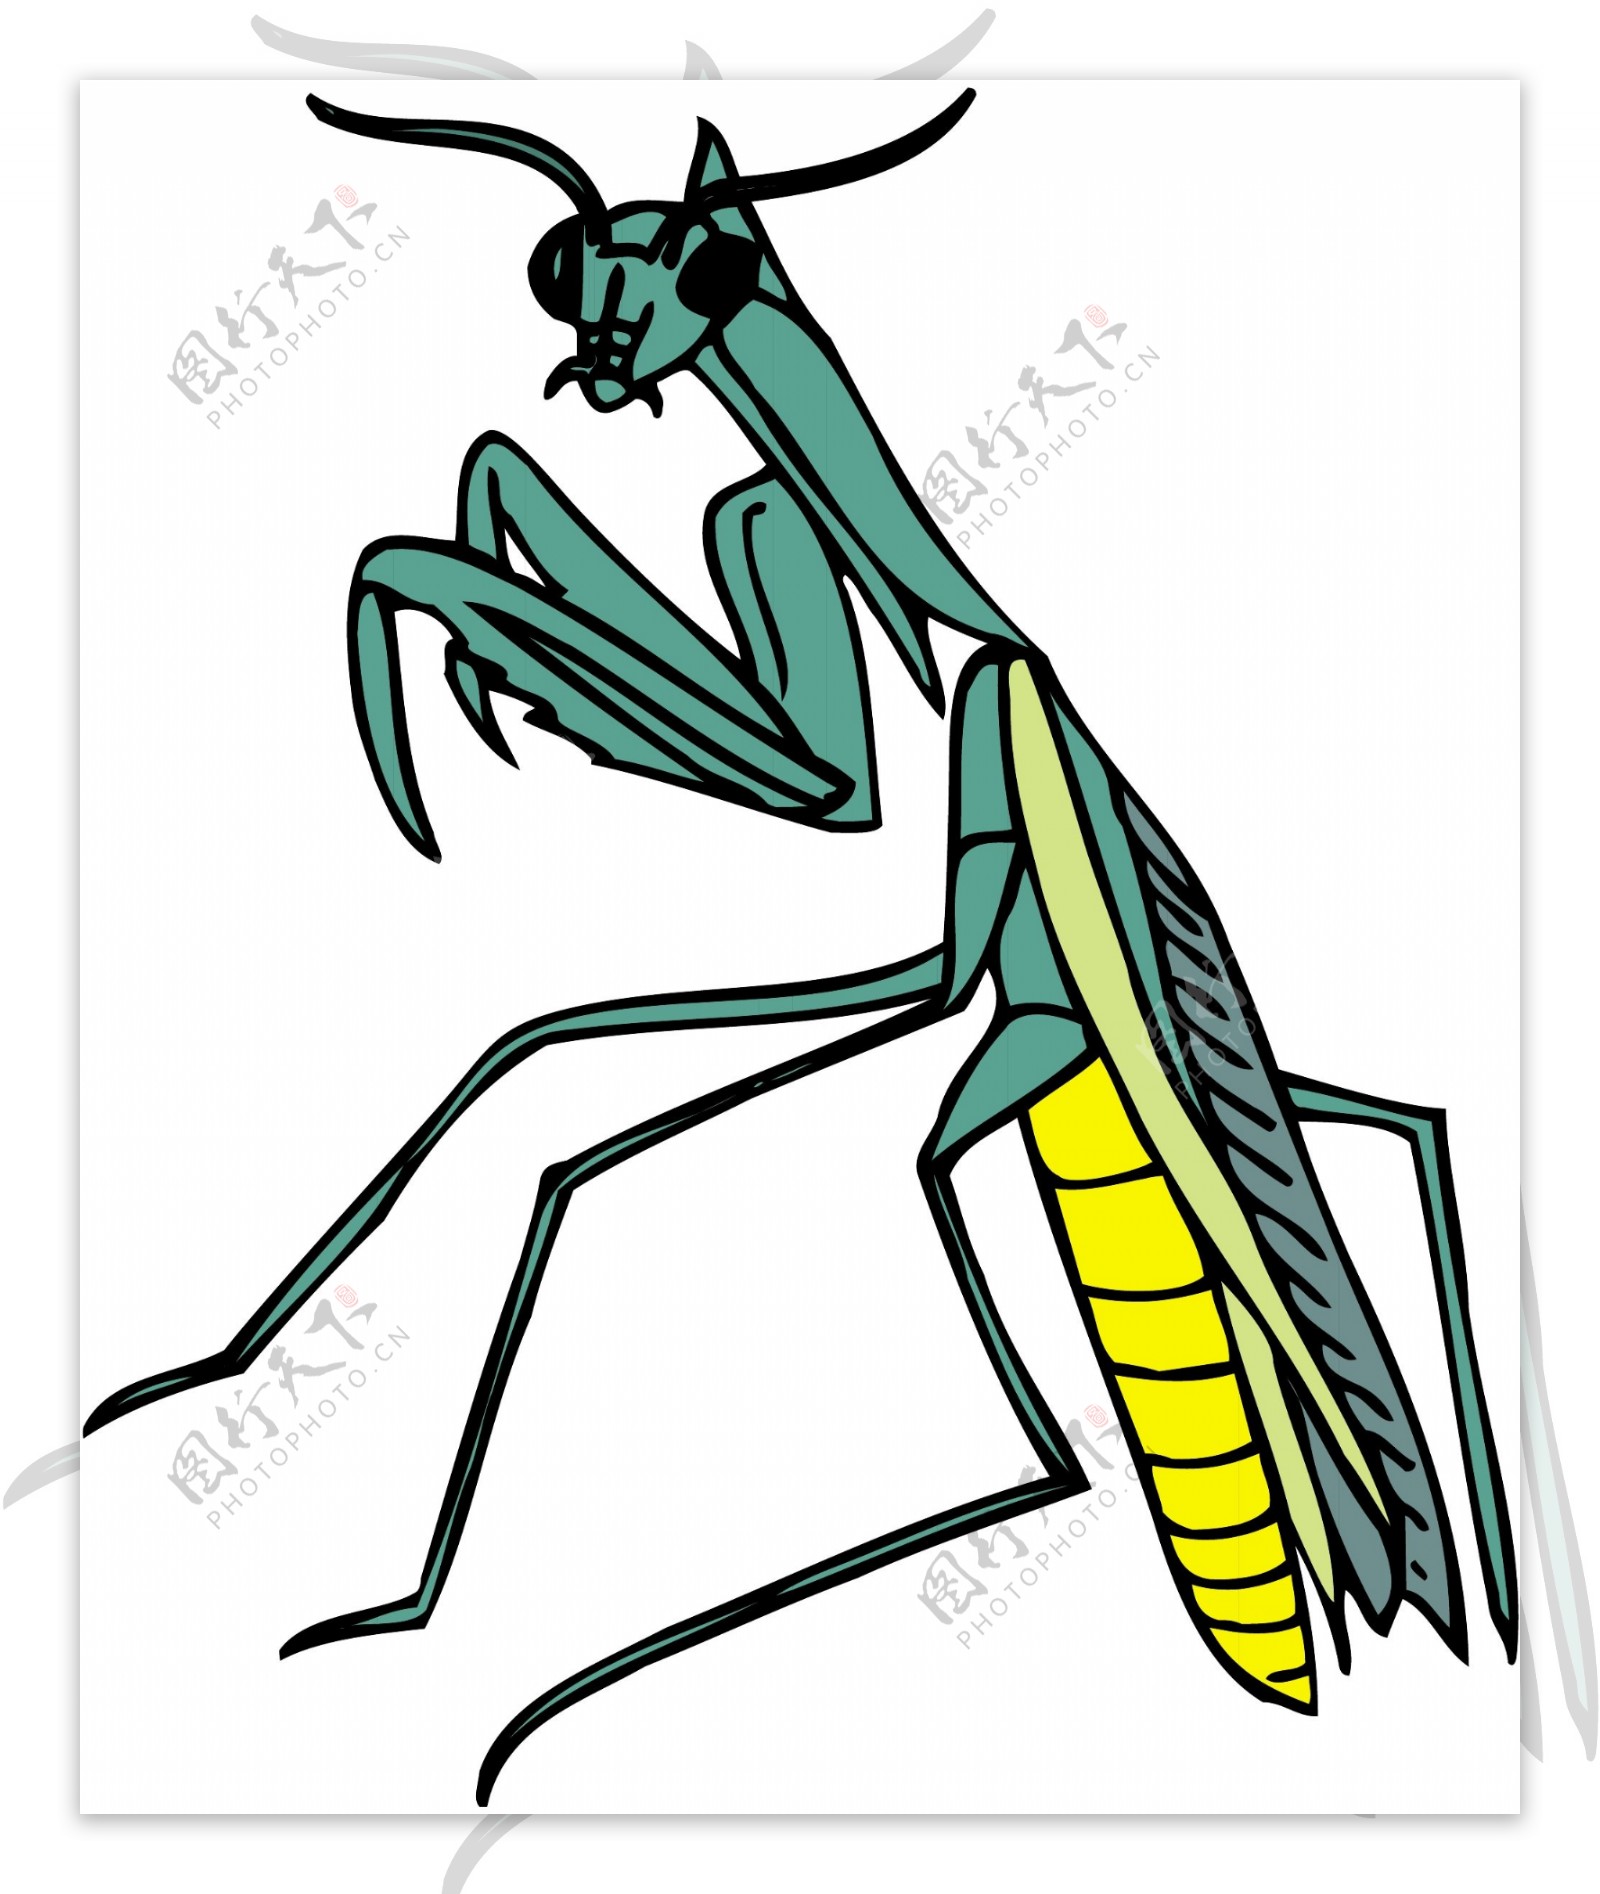 甲虫昆虫矢量素材EPS格式0282